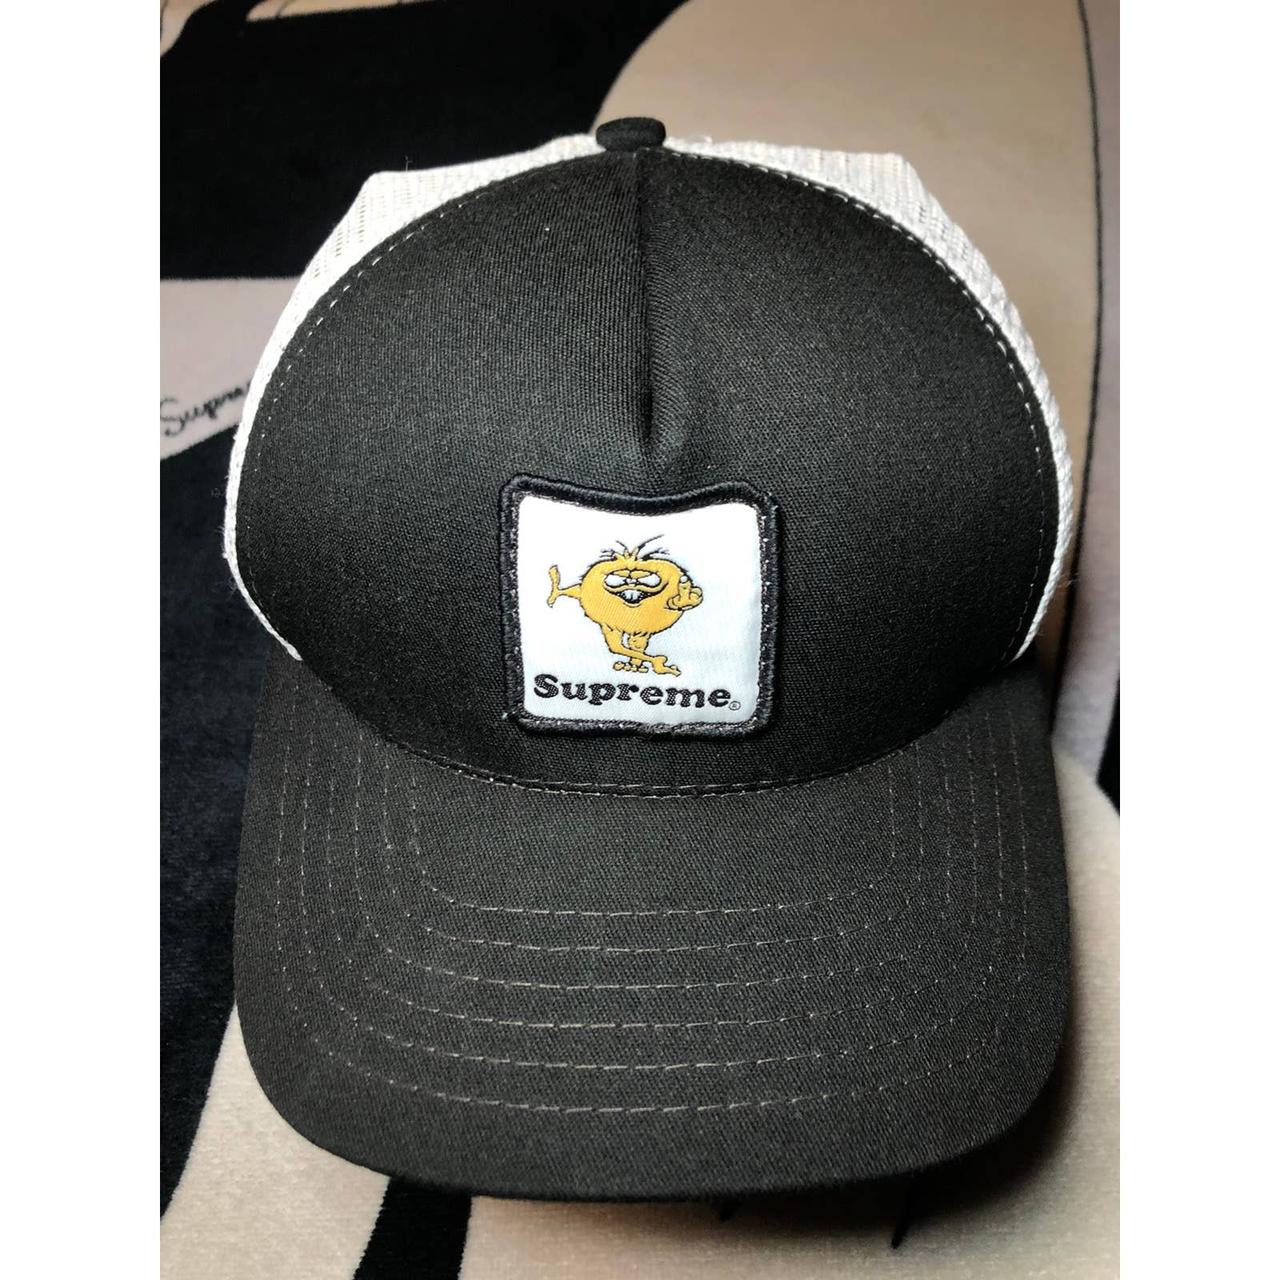 Supreme Trucker Hats for Men